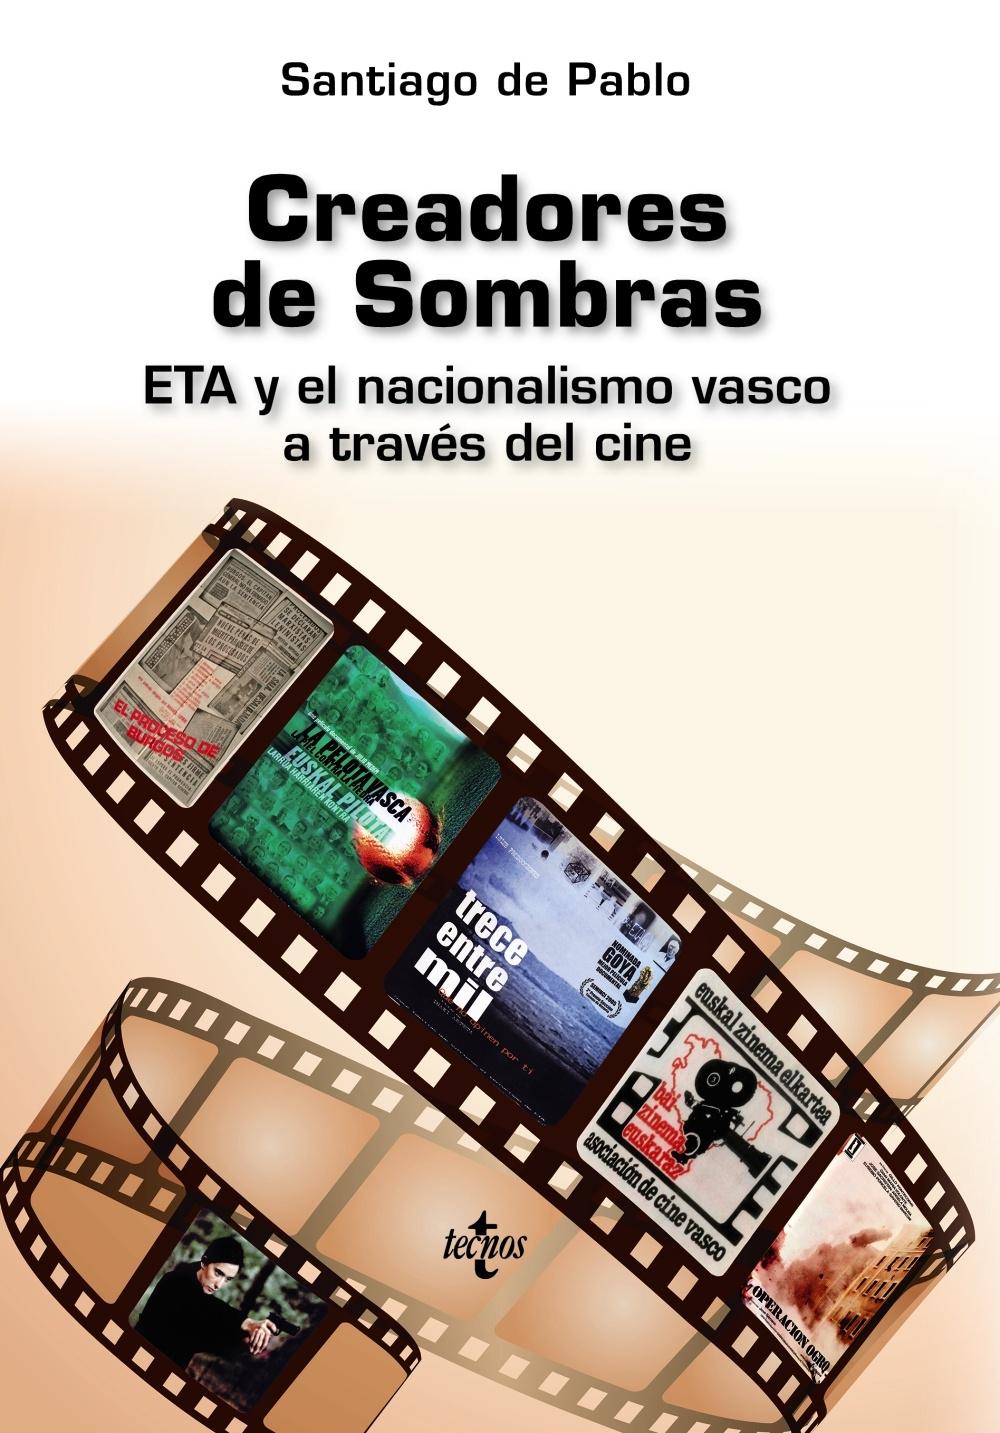 Creadores de Sombras "ETA y el nacionalismo vasco a través del cine". 